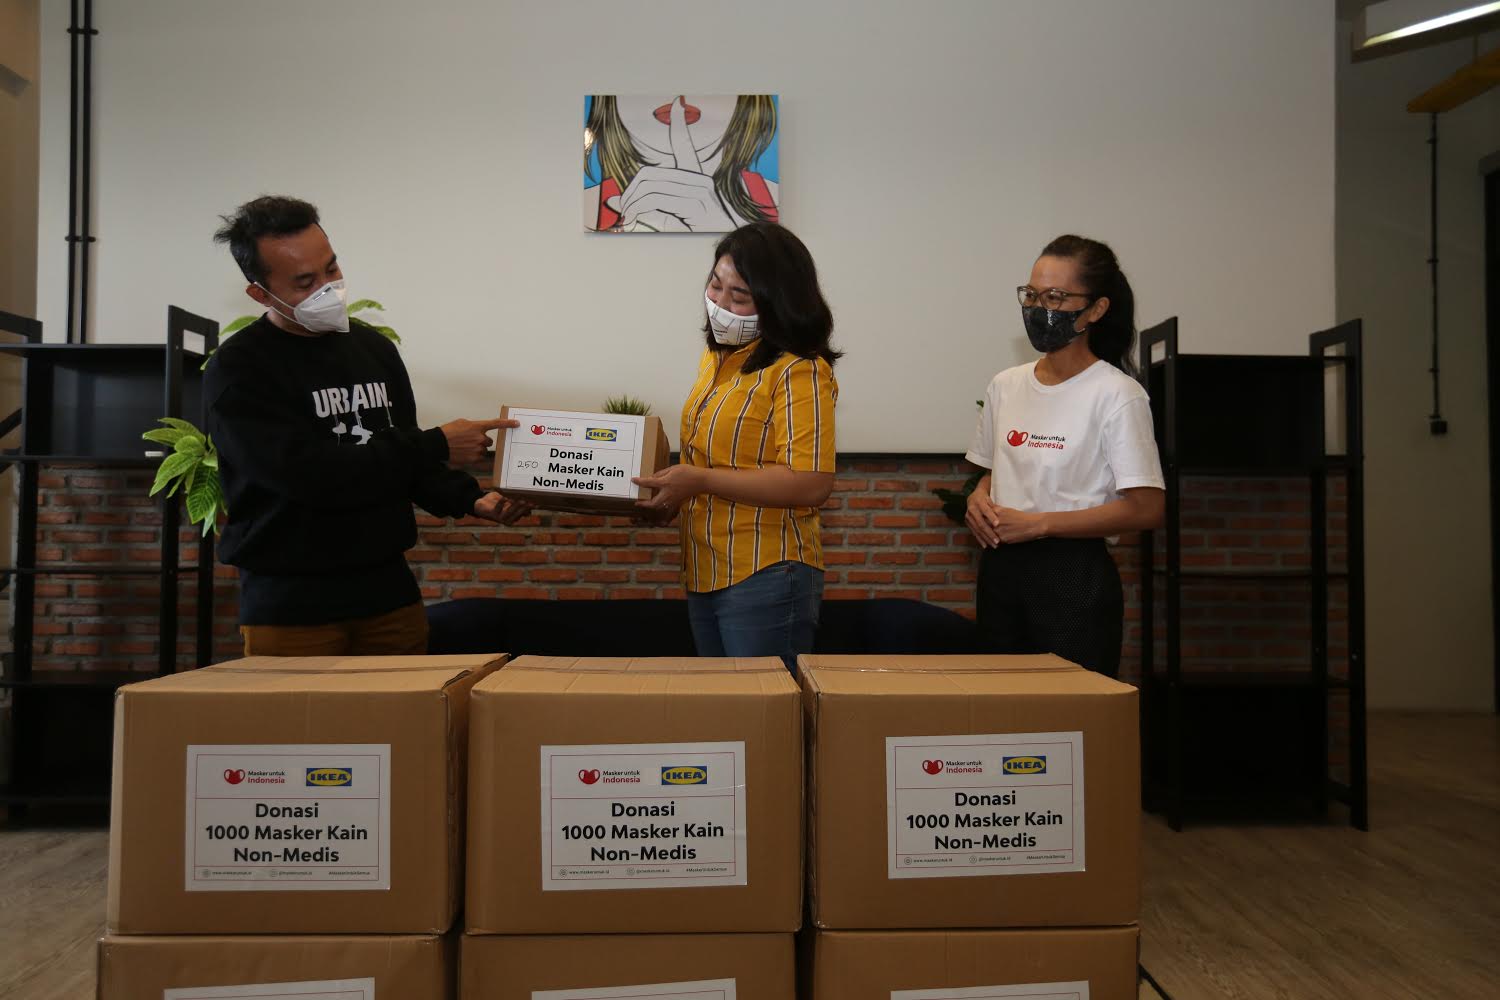 Lewat Program Belanja untuk Kebaikan, IKEA Indonesia Salurkan 11.250 Masker Kain Non-Medis